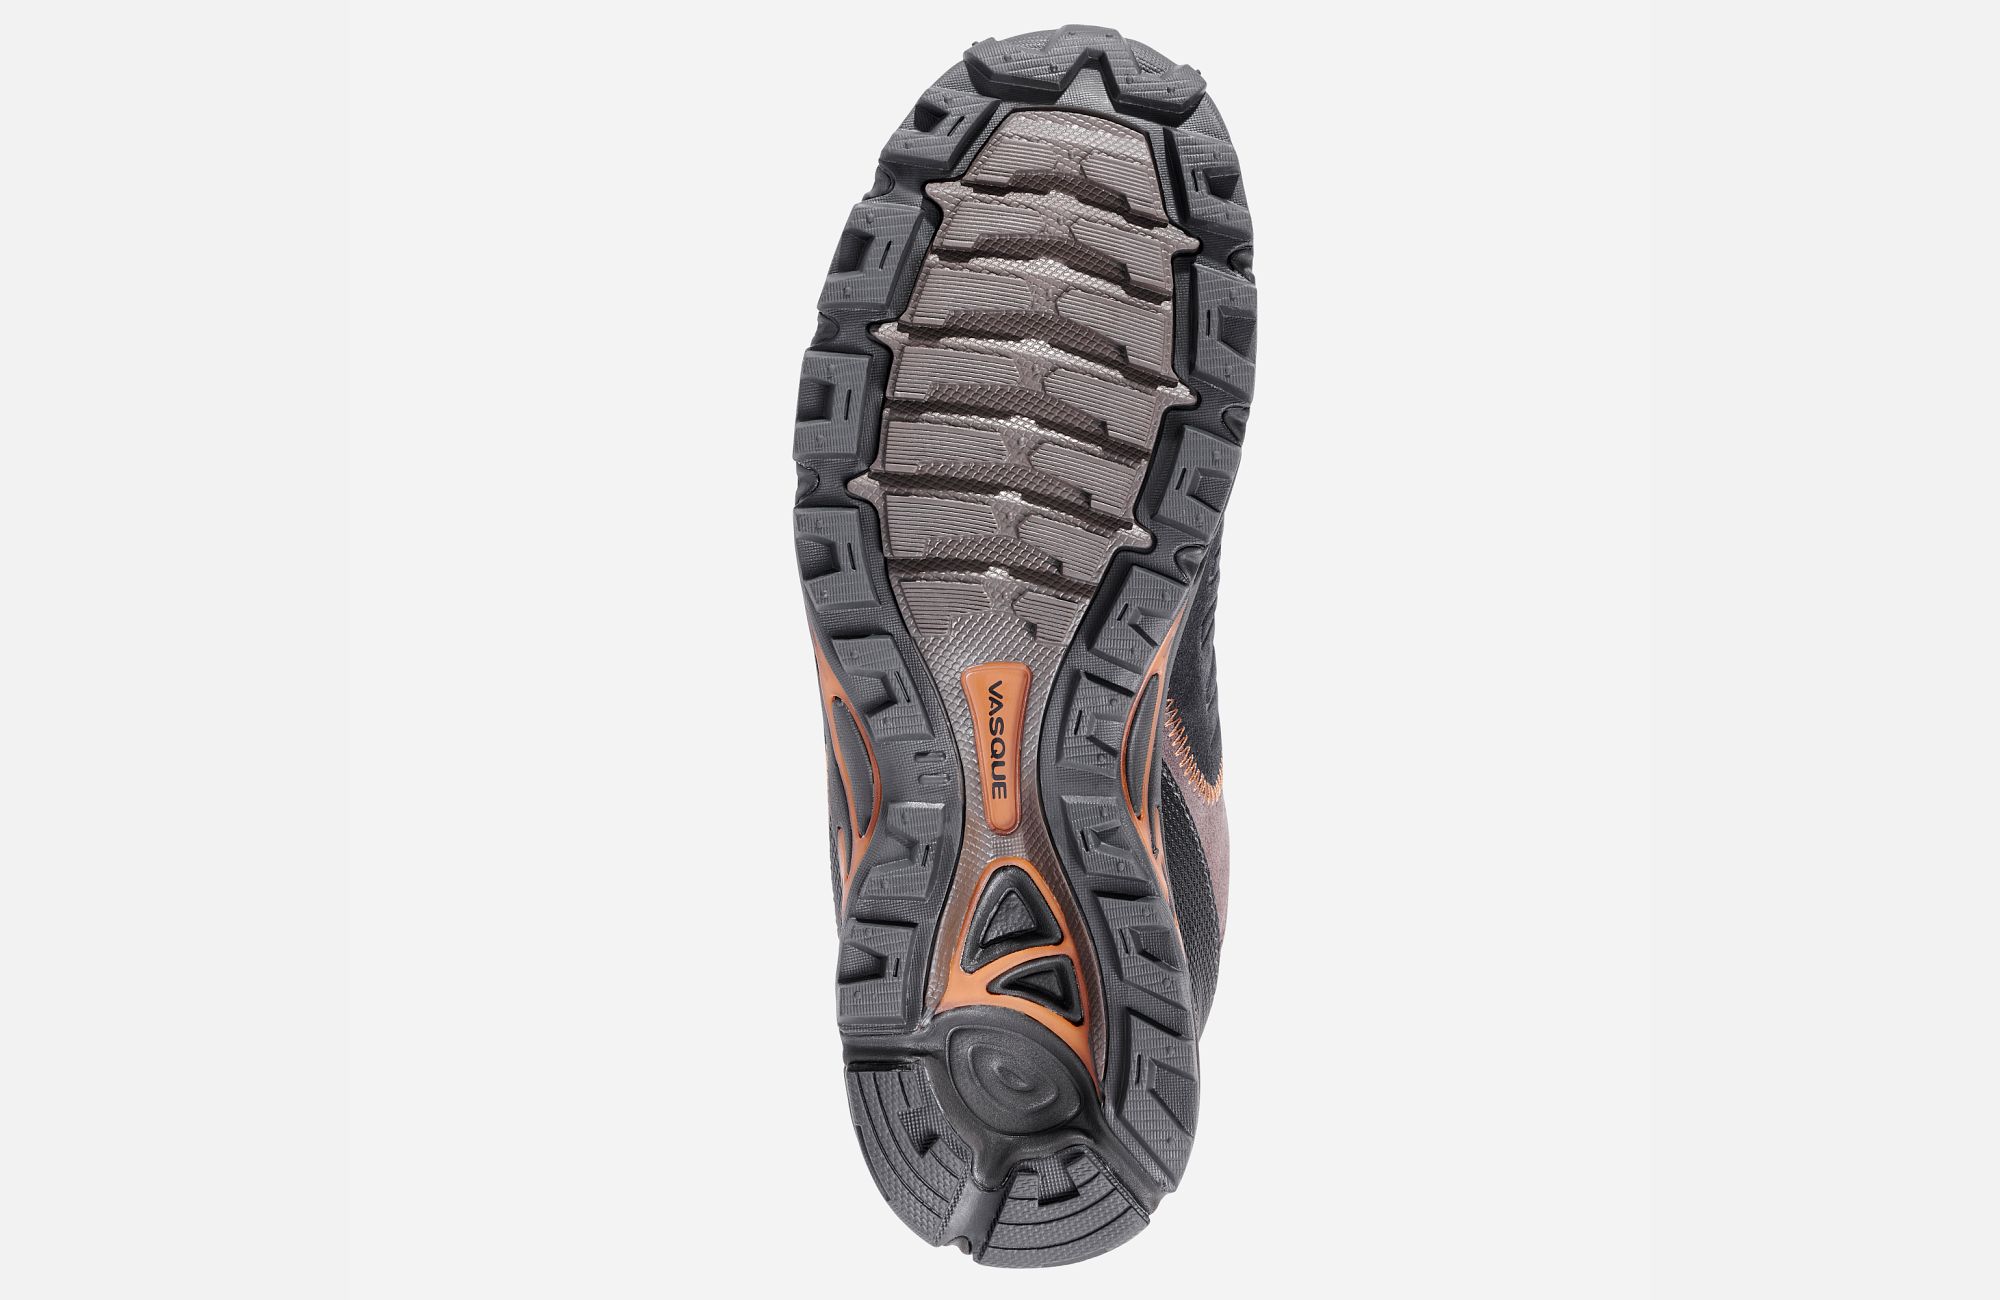 Vasque Men’s Juxt Hiking Shoe | Halby's